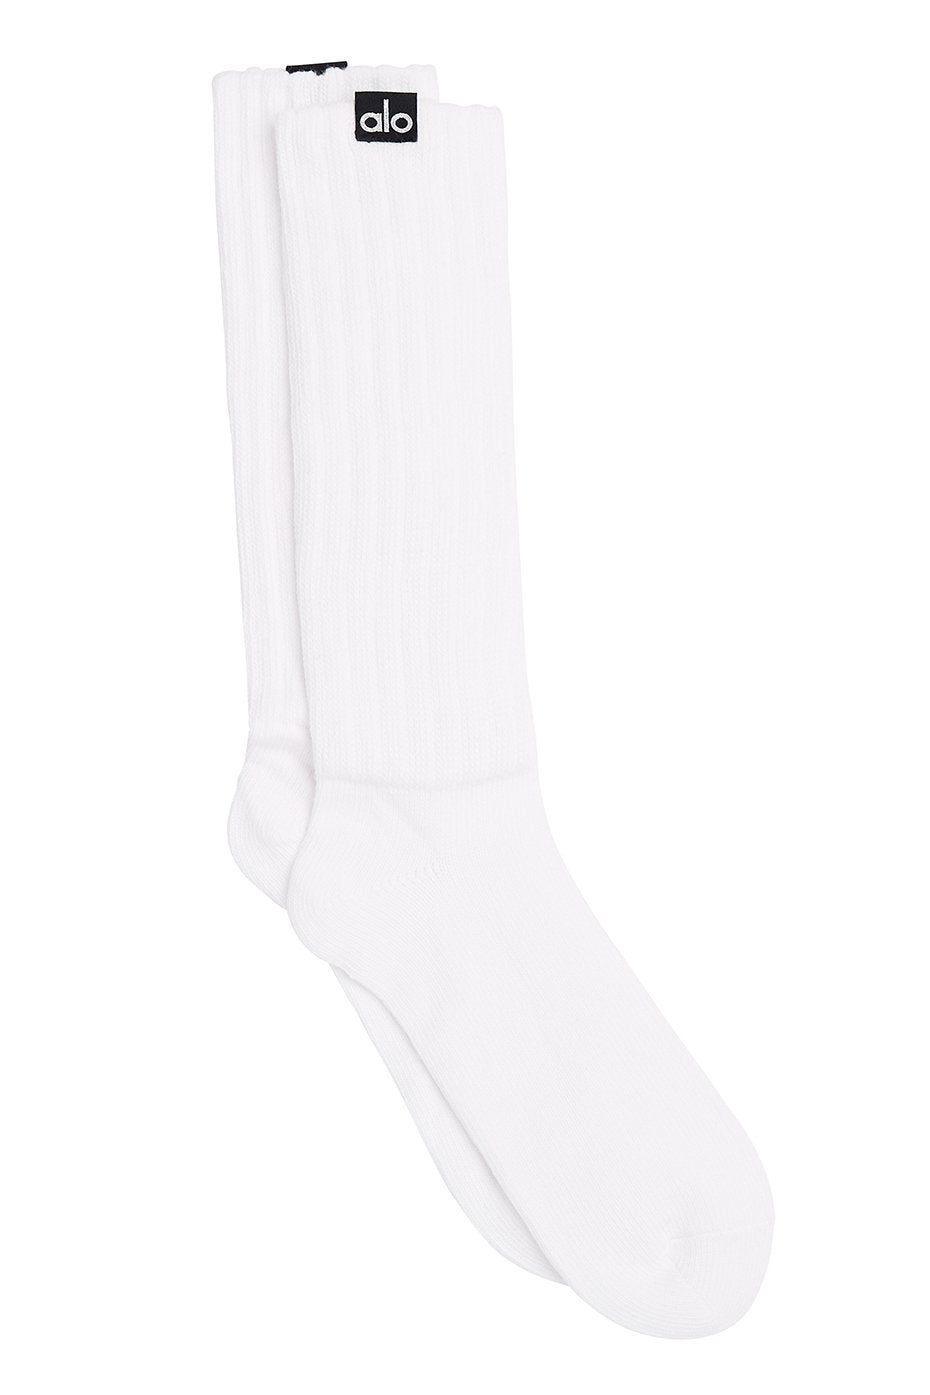 Unisex Throwback Sock - Gravel/White